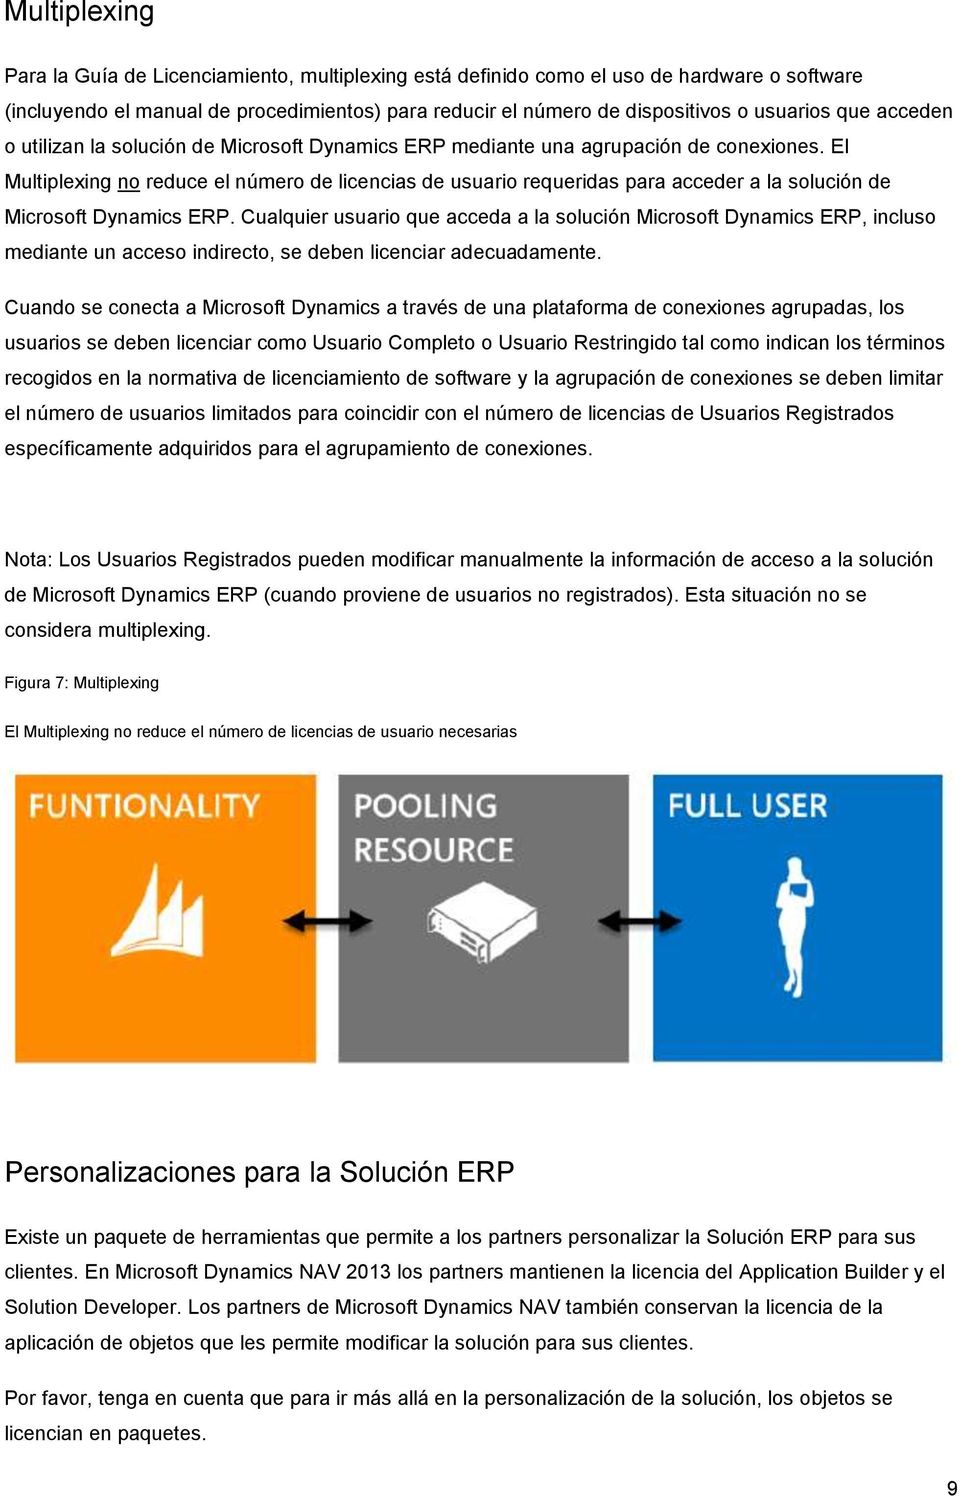 El Multiplexing no reduce el número de licencias de usuario requeridas para acceder a la solución de Microsoft Dynamics ERP.